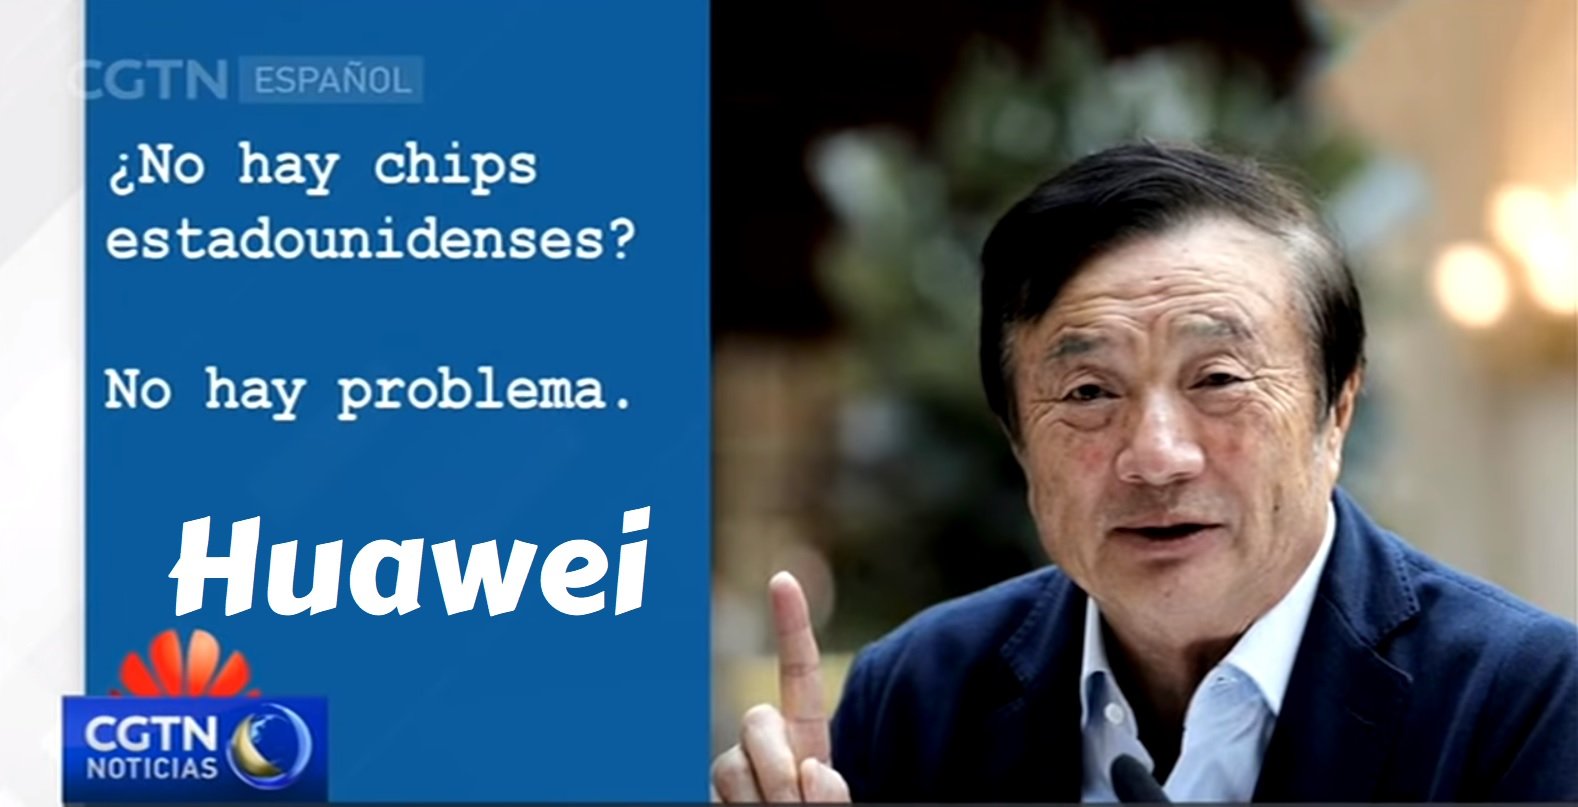 Huawei dice que no necesita chips de los Estados Unidos e insistirán con 5G